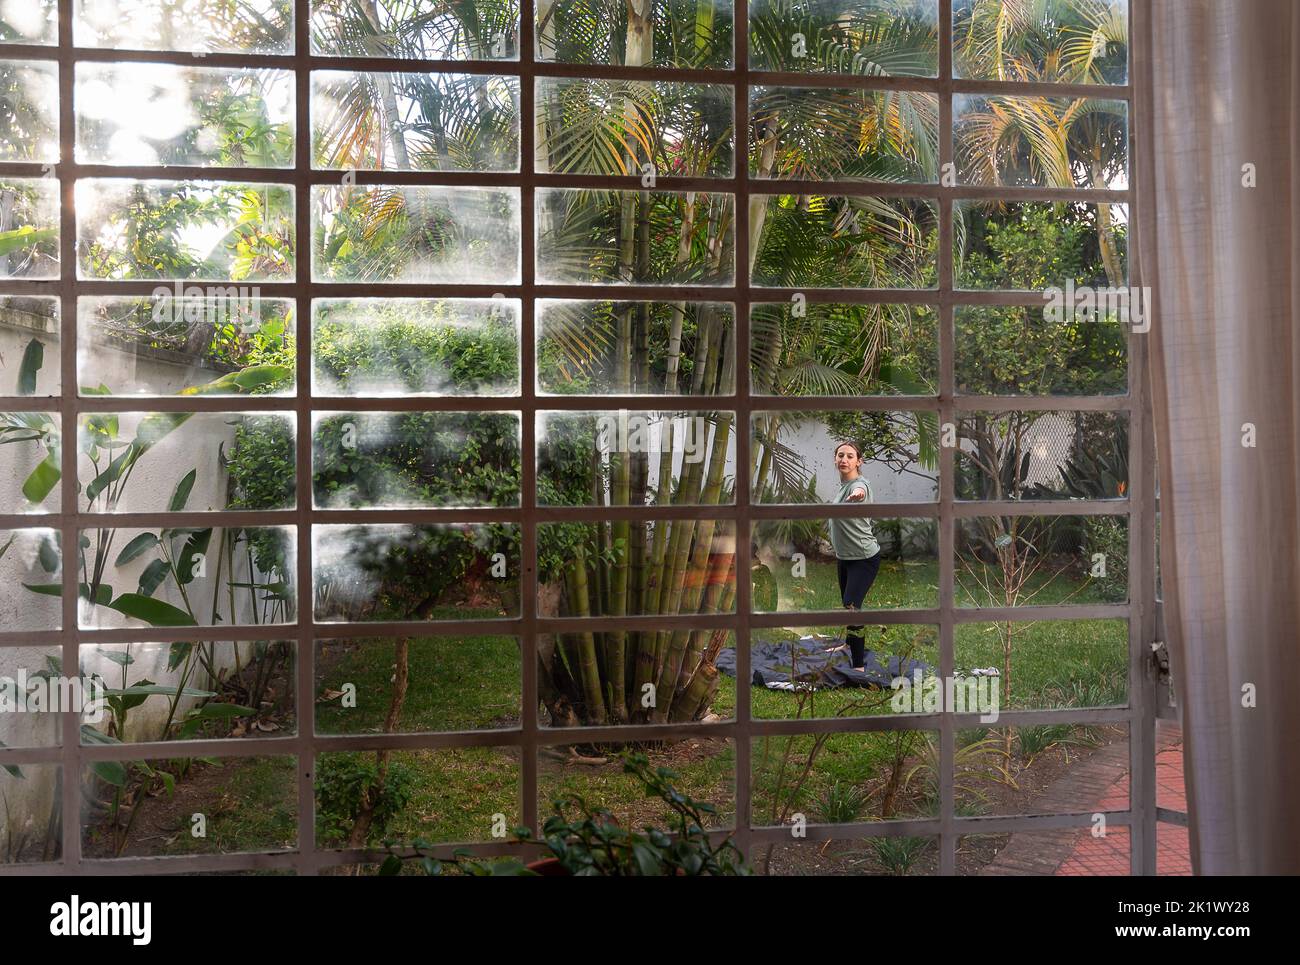 Mujer practica yoga en el patio trasero rodeado de plantas y árboles, capturado a través de la ventana de la casa con vibraciones tropicales y palmeras Foto de stock